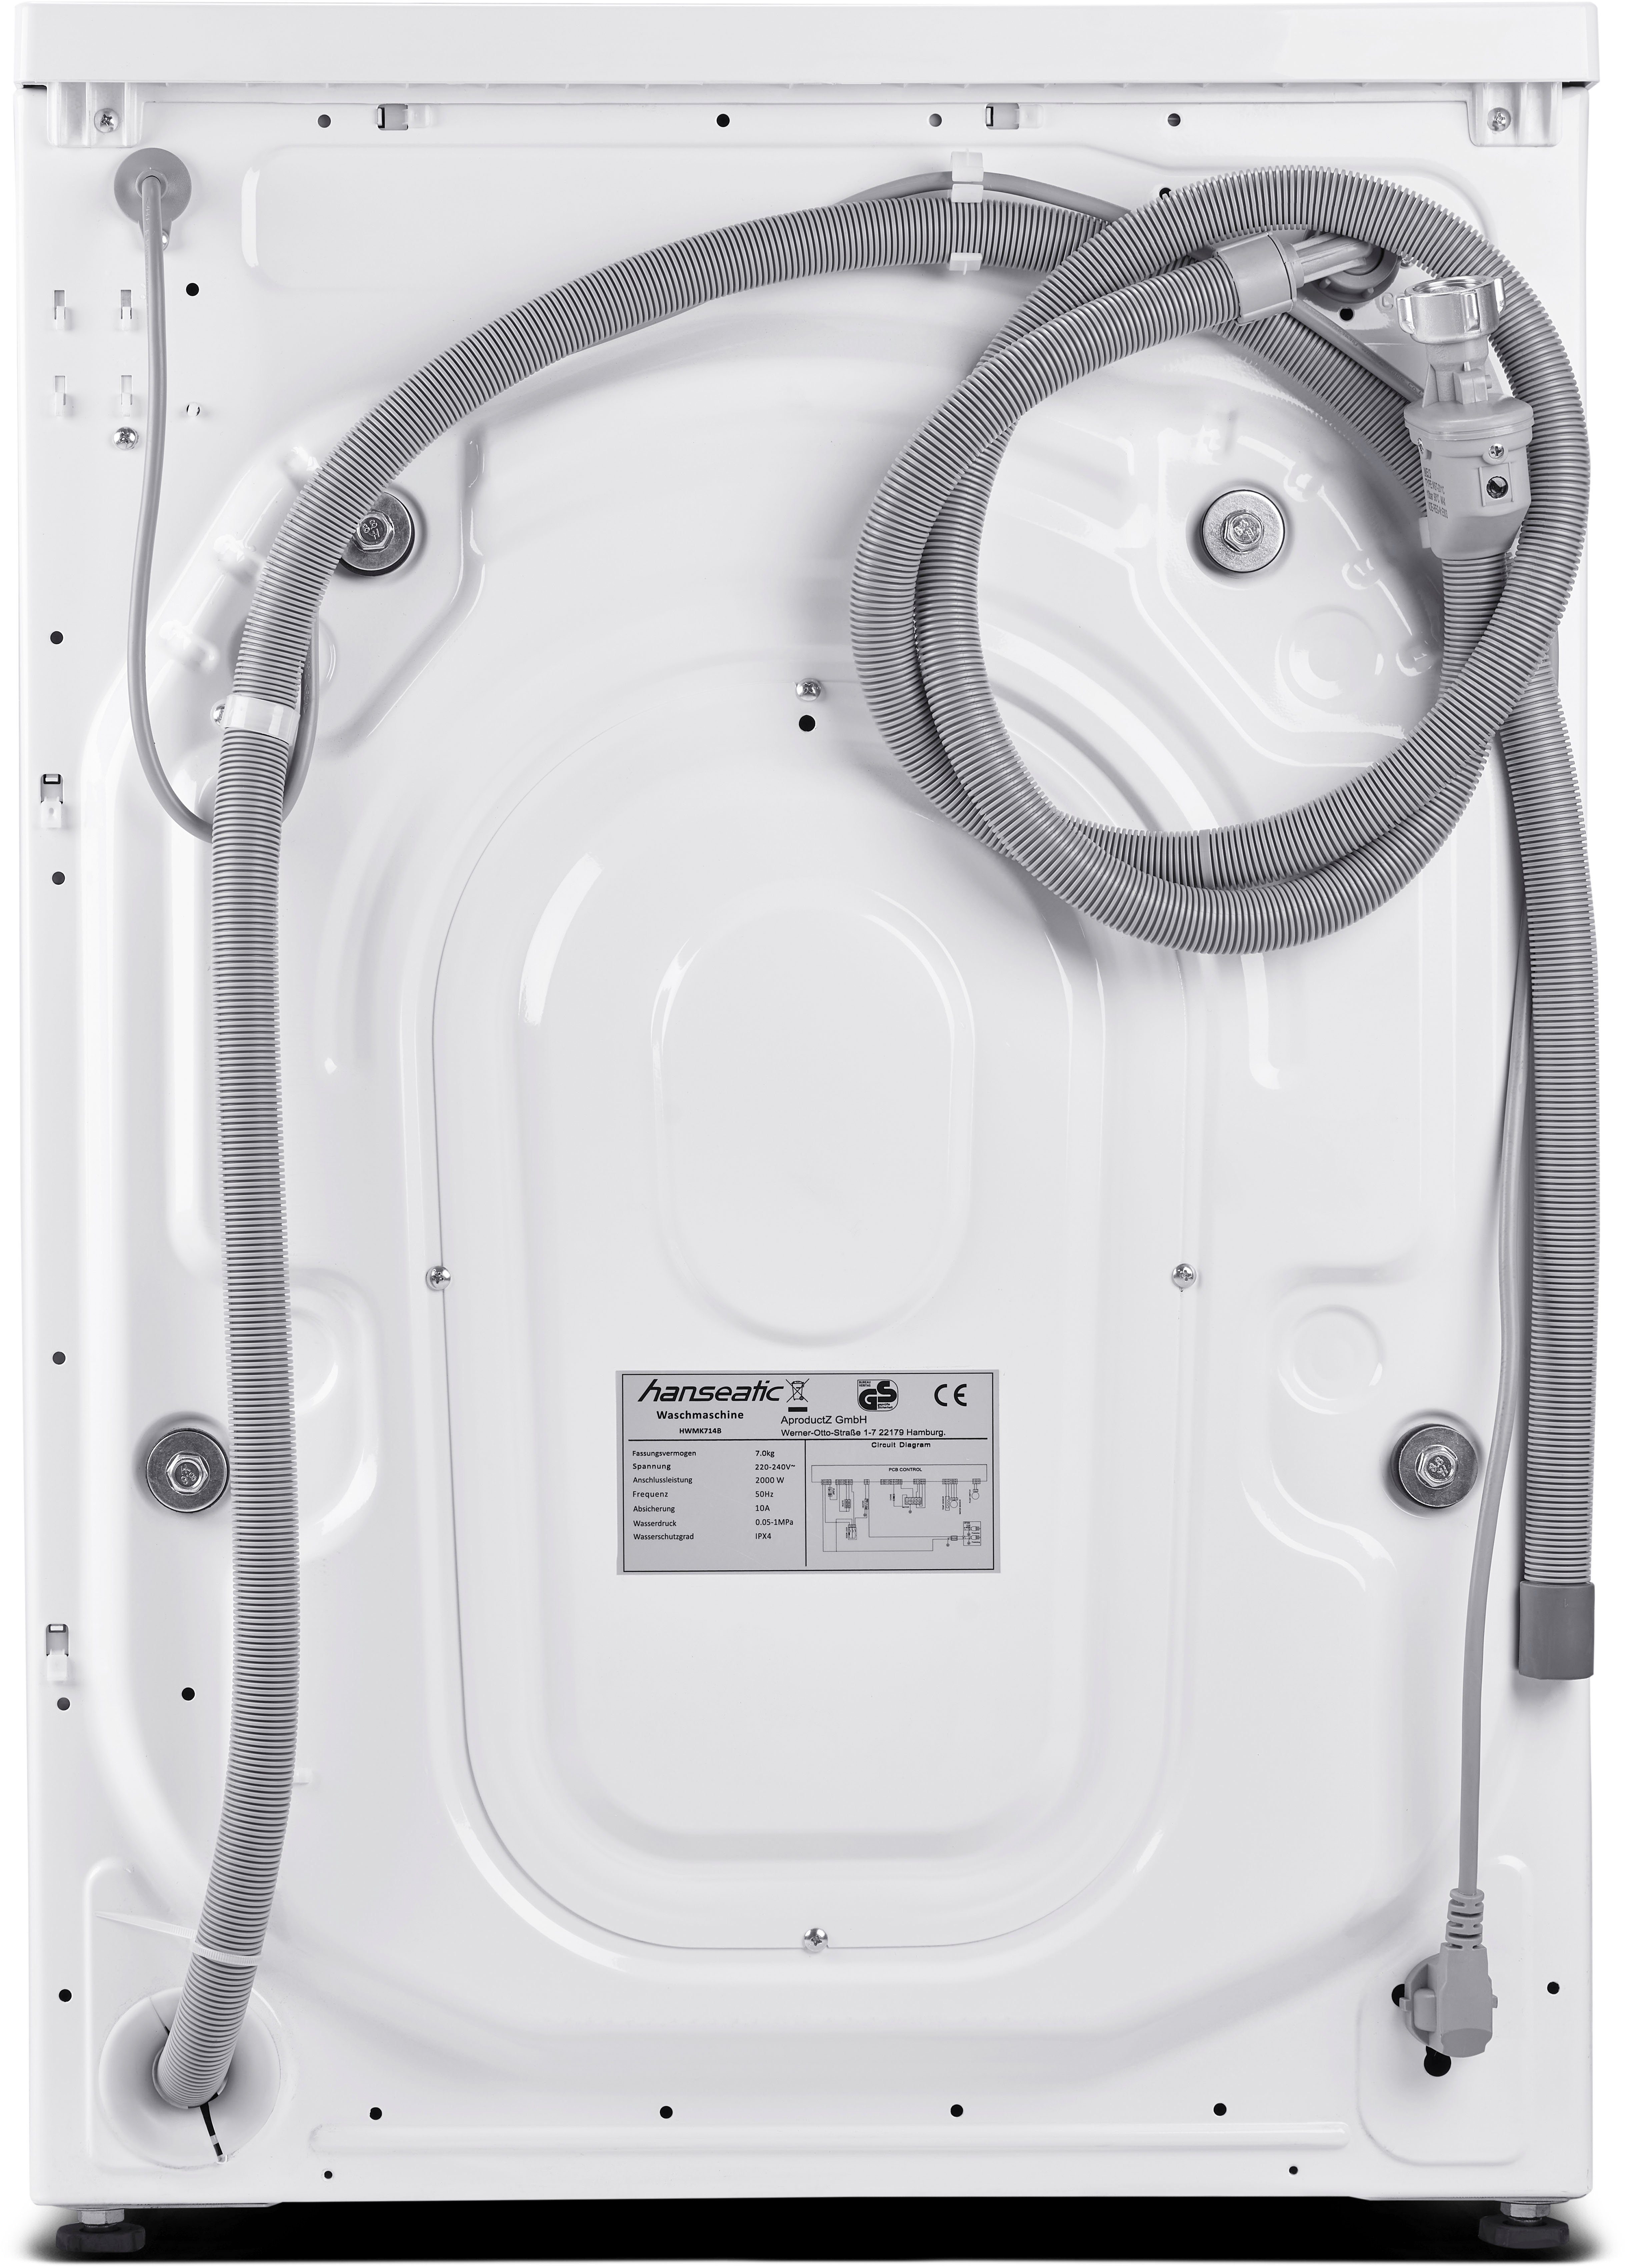 Dampfoption Vollwasserschutz, Mengenautomatik, kg, HWMK714A, 1400 U/min, Nachtwaschprogramm, 7 Hanseatic Waschmaschine